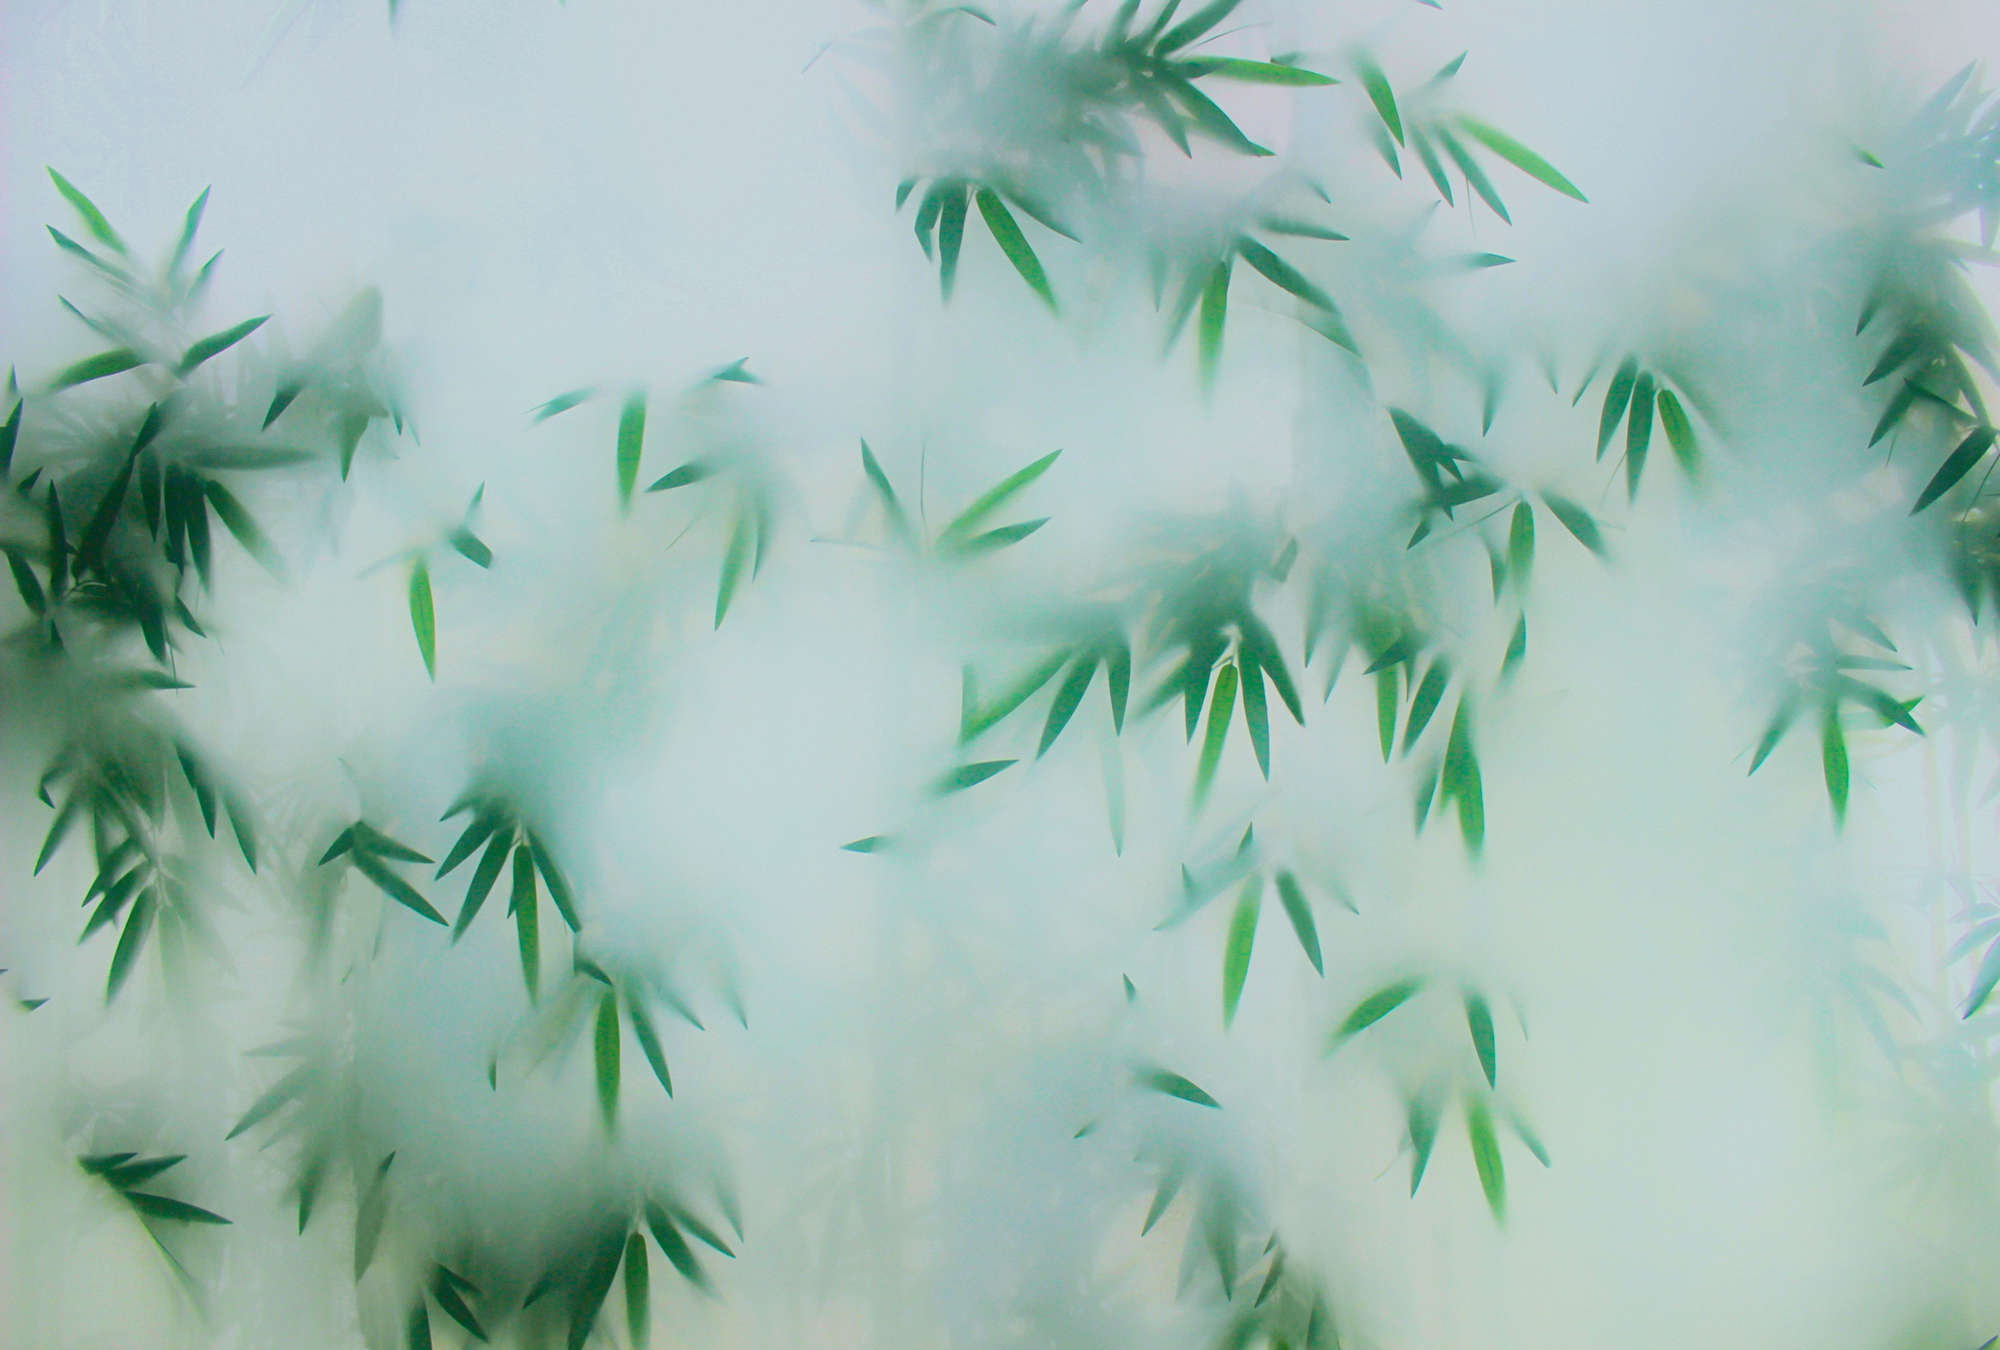             Panda Paradise 1 – Bambus Fototapete Grüne Blätter im Nebel
        